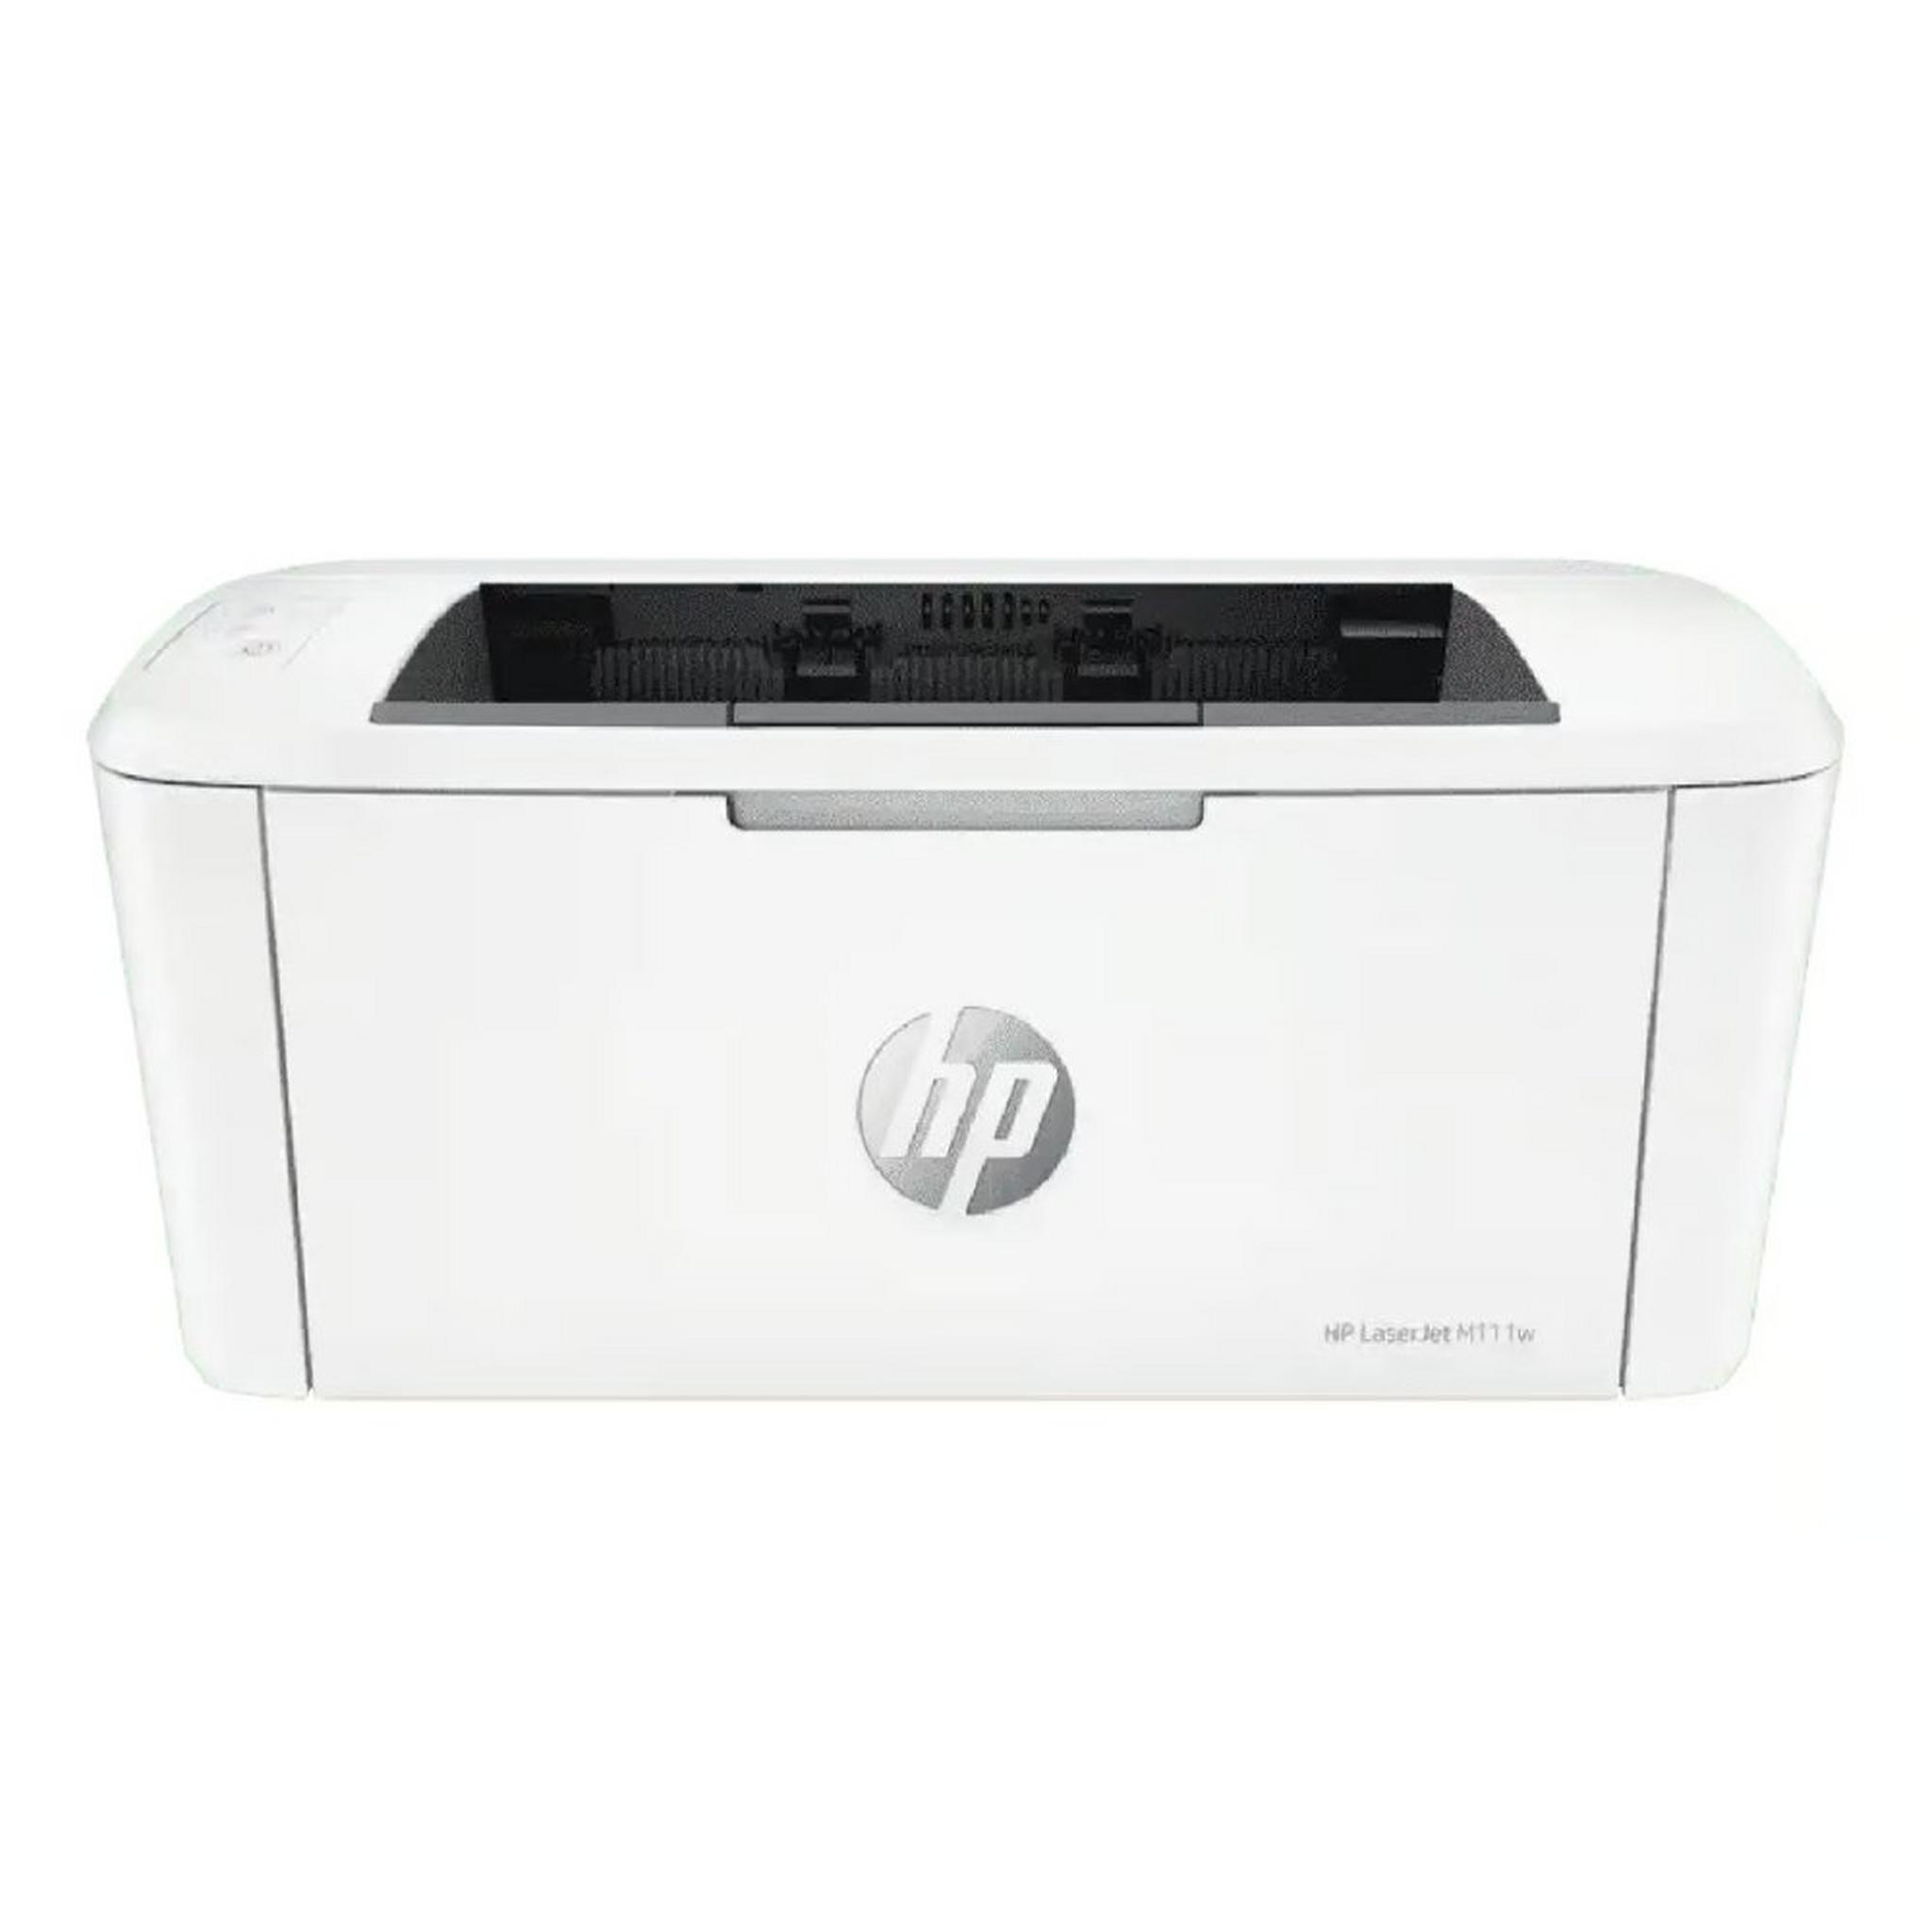 HP LaserJet M111w Mono Printer (7MD68A)